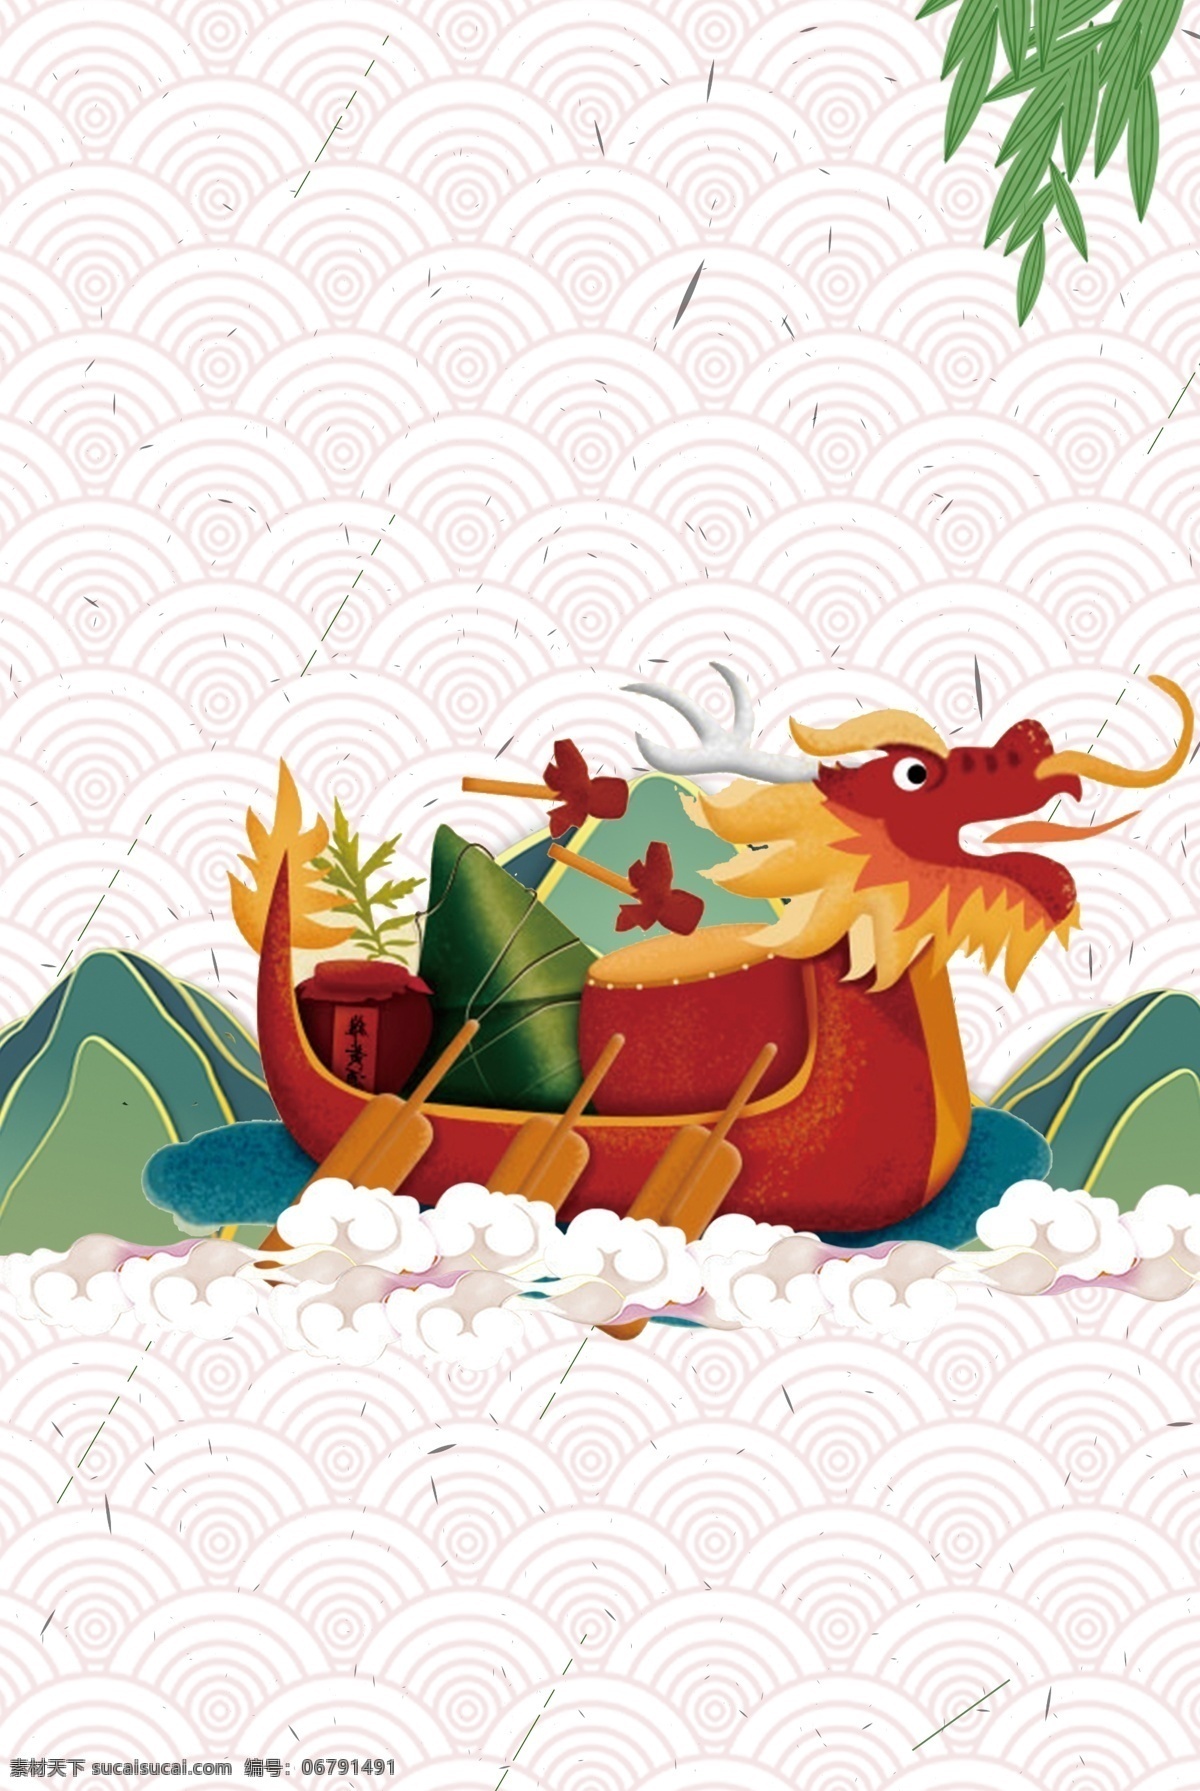 简单 龙舟 载 粽子 背景 端午 端午节 端午节快乐 传统节日 传统端午 五月初五 粽子节 赛龙舟